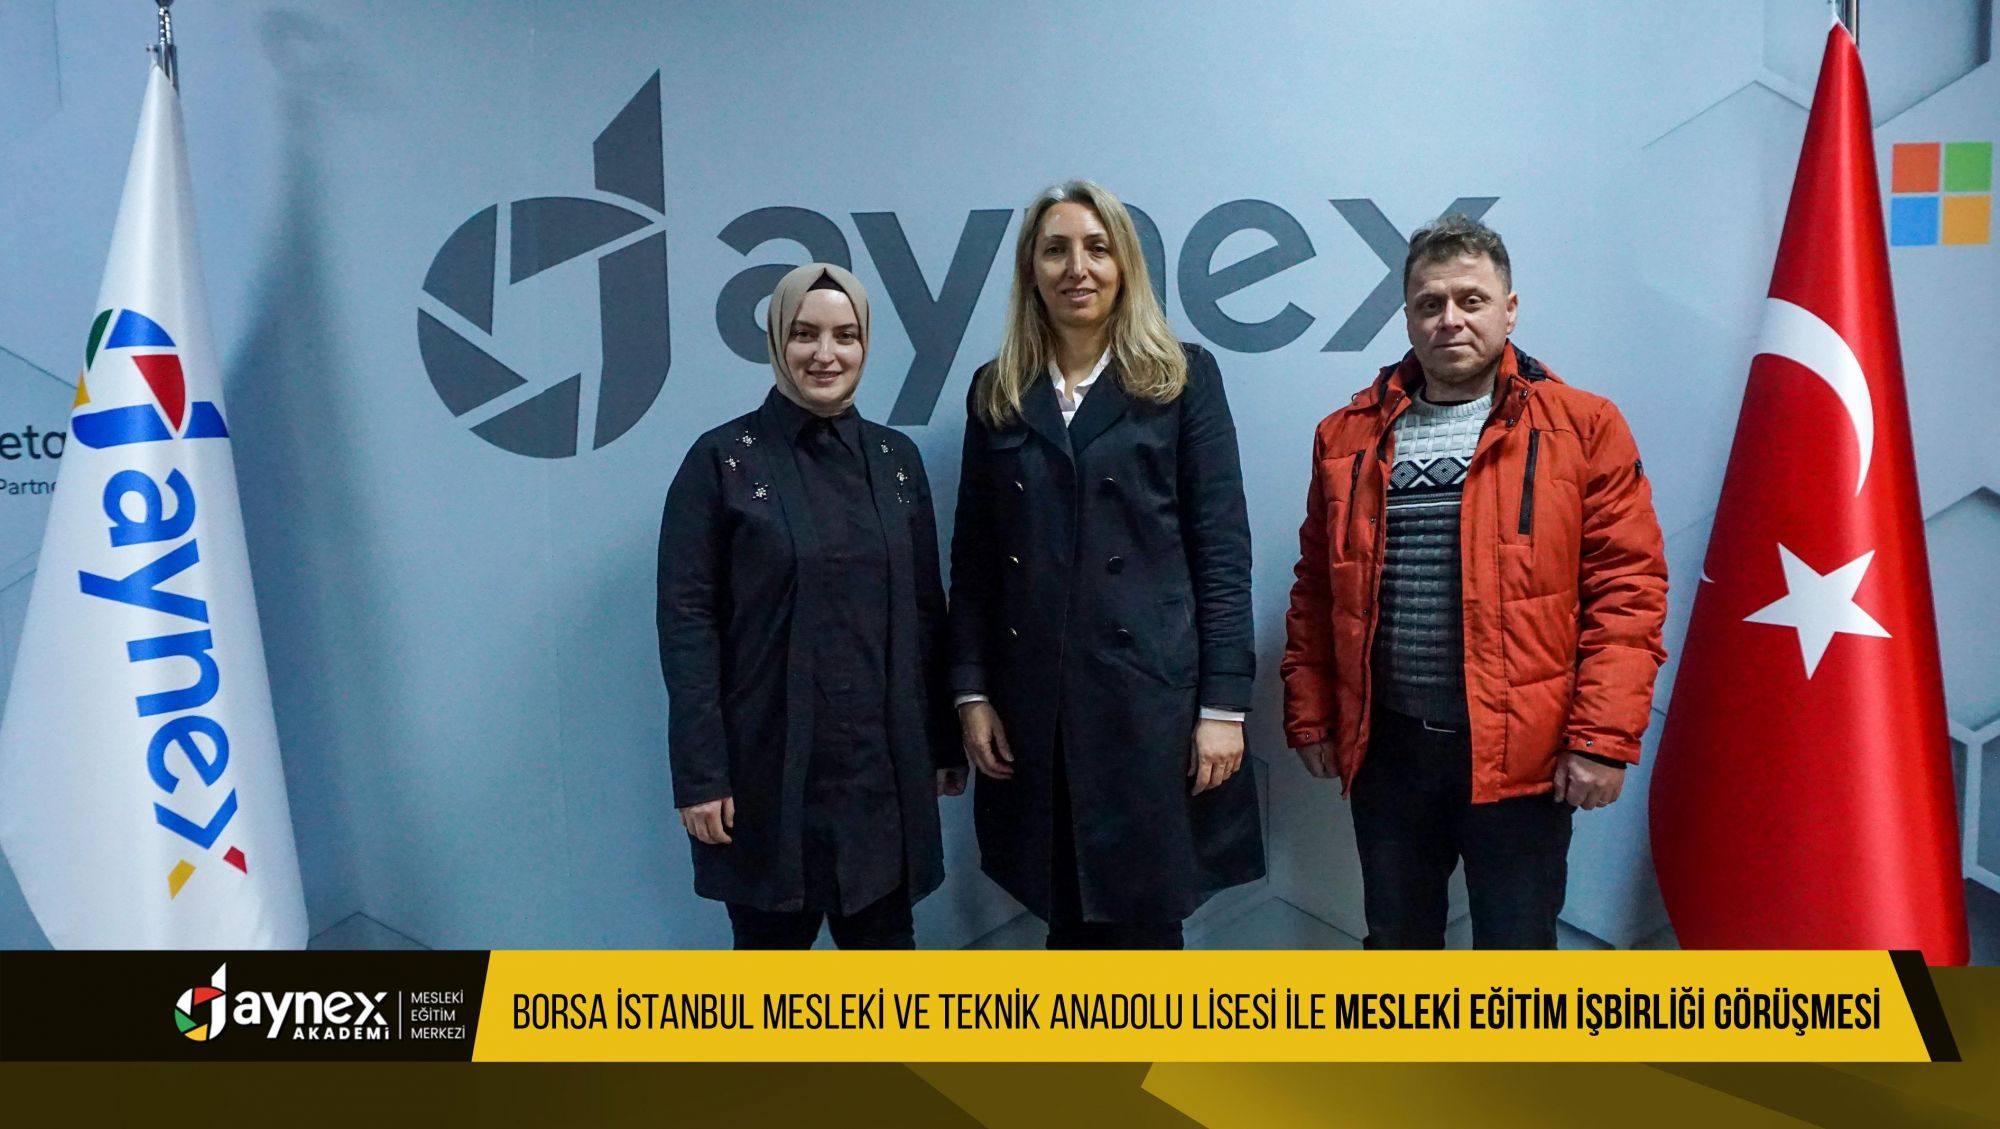 Trabzon Ortahisar Borsa İstanbul Mesleki ve Teknik Anadolu Lisesi ile Mesleki Eğitim İşbirliği Görüşmesi